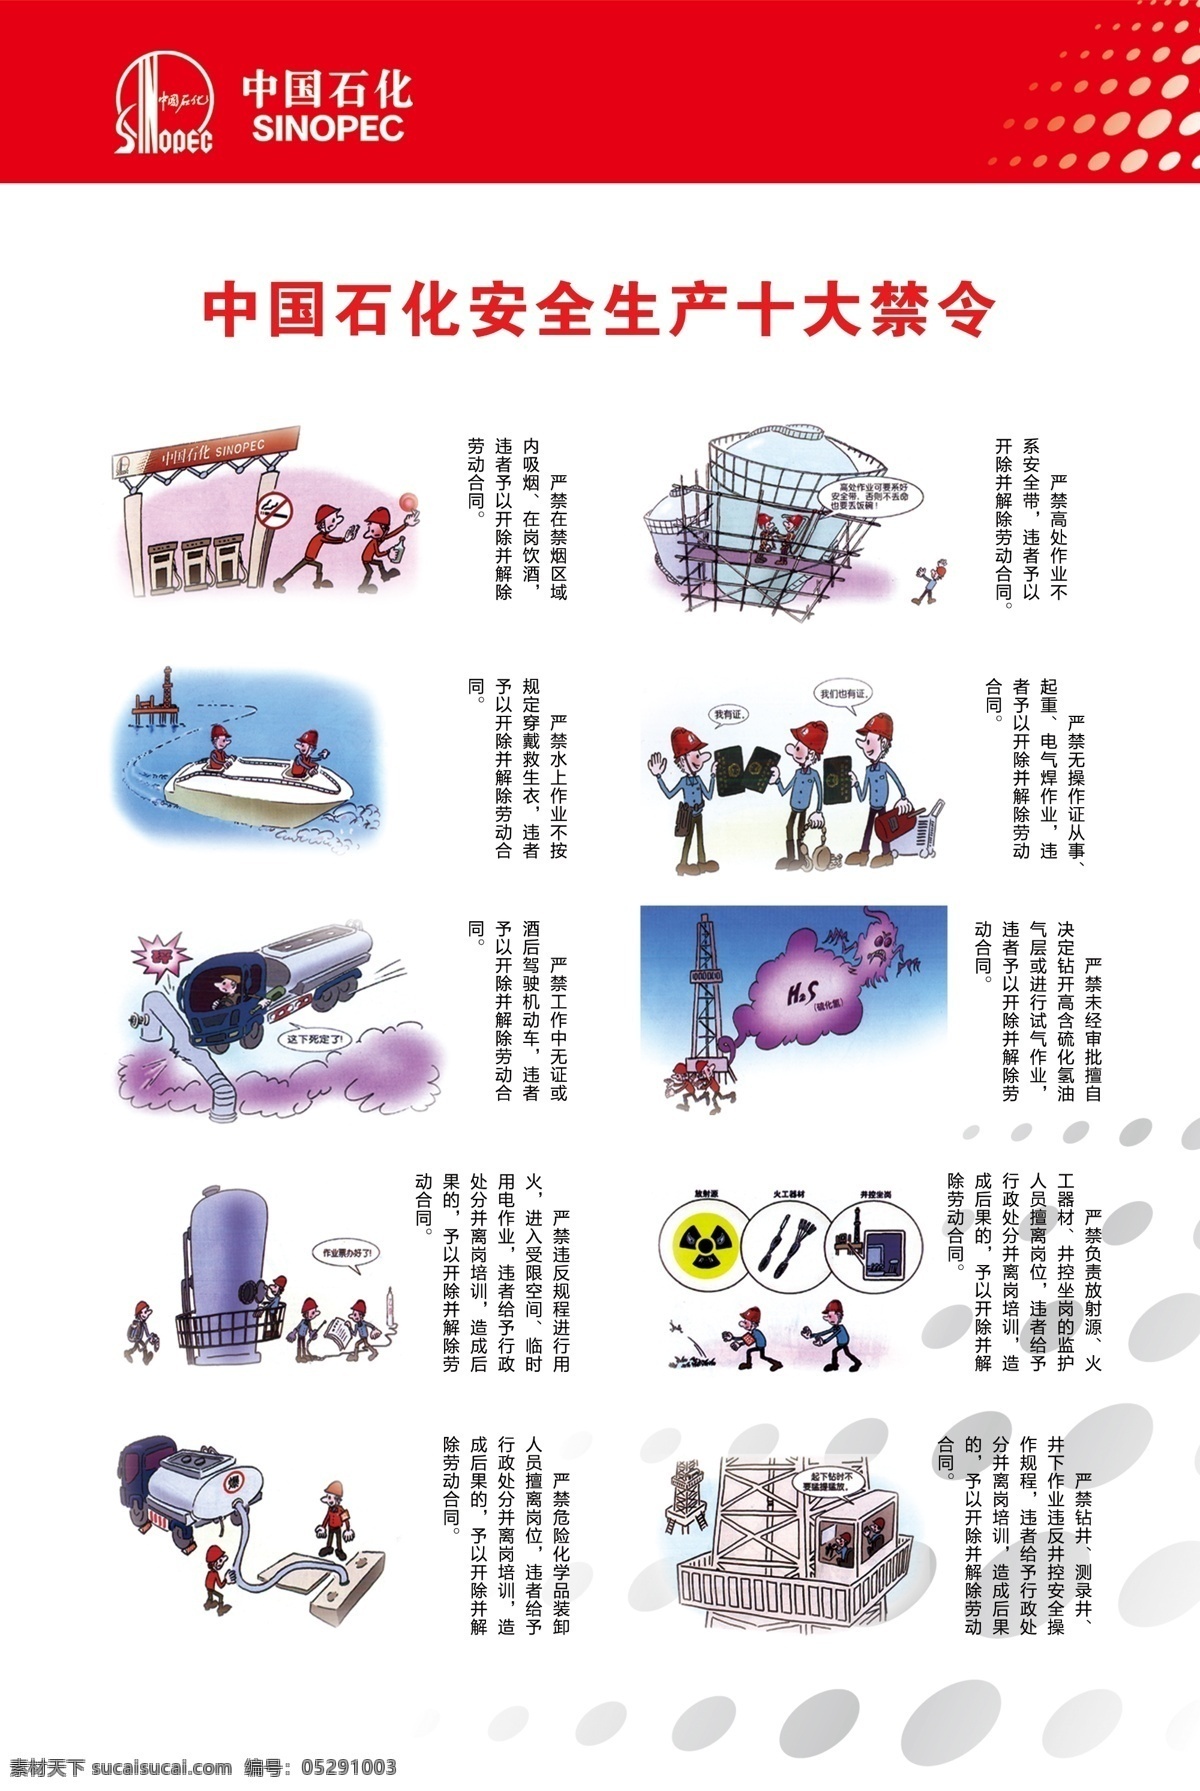 中国石化 安全生产 十大 禁令 安全 生产 十大禁令 展板 共享作品 展板模板